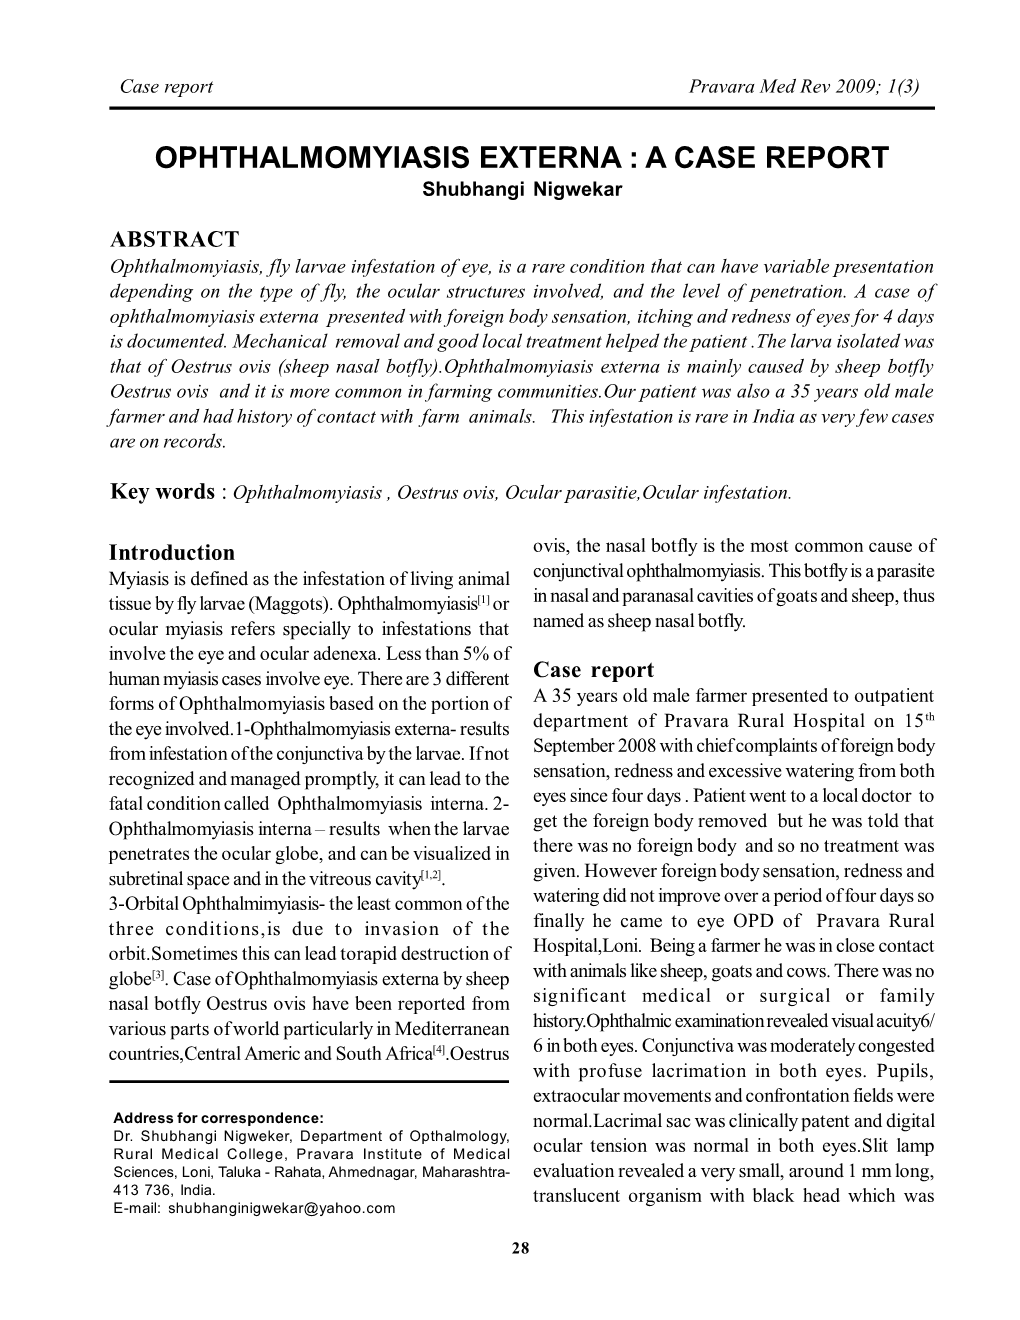 Ophthalmomyiasis Externa : a Case Report, Shubhangi Nigwekar